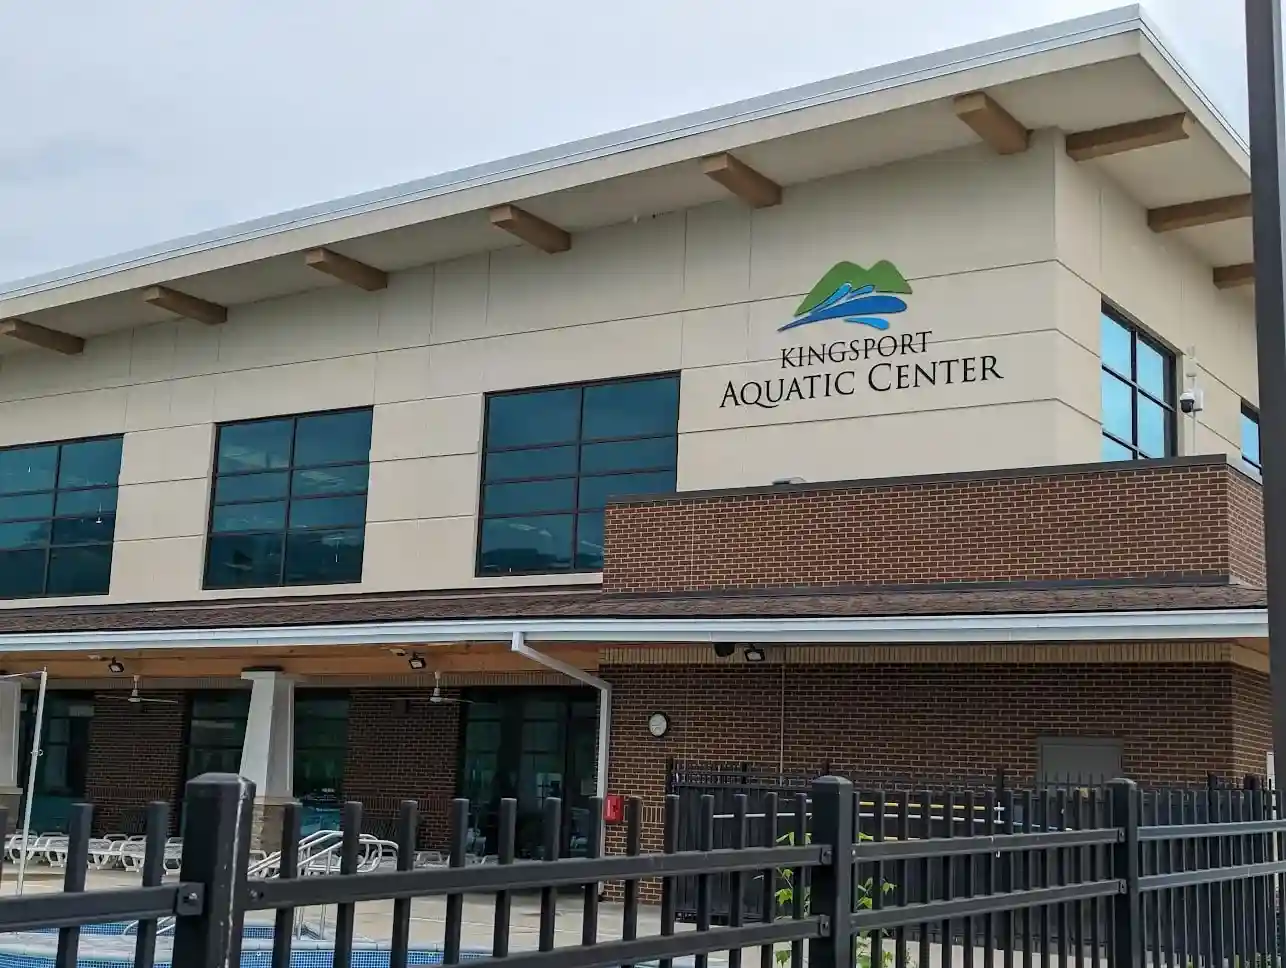 Kingsport Aquatic Center